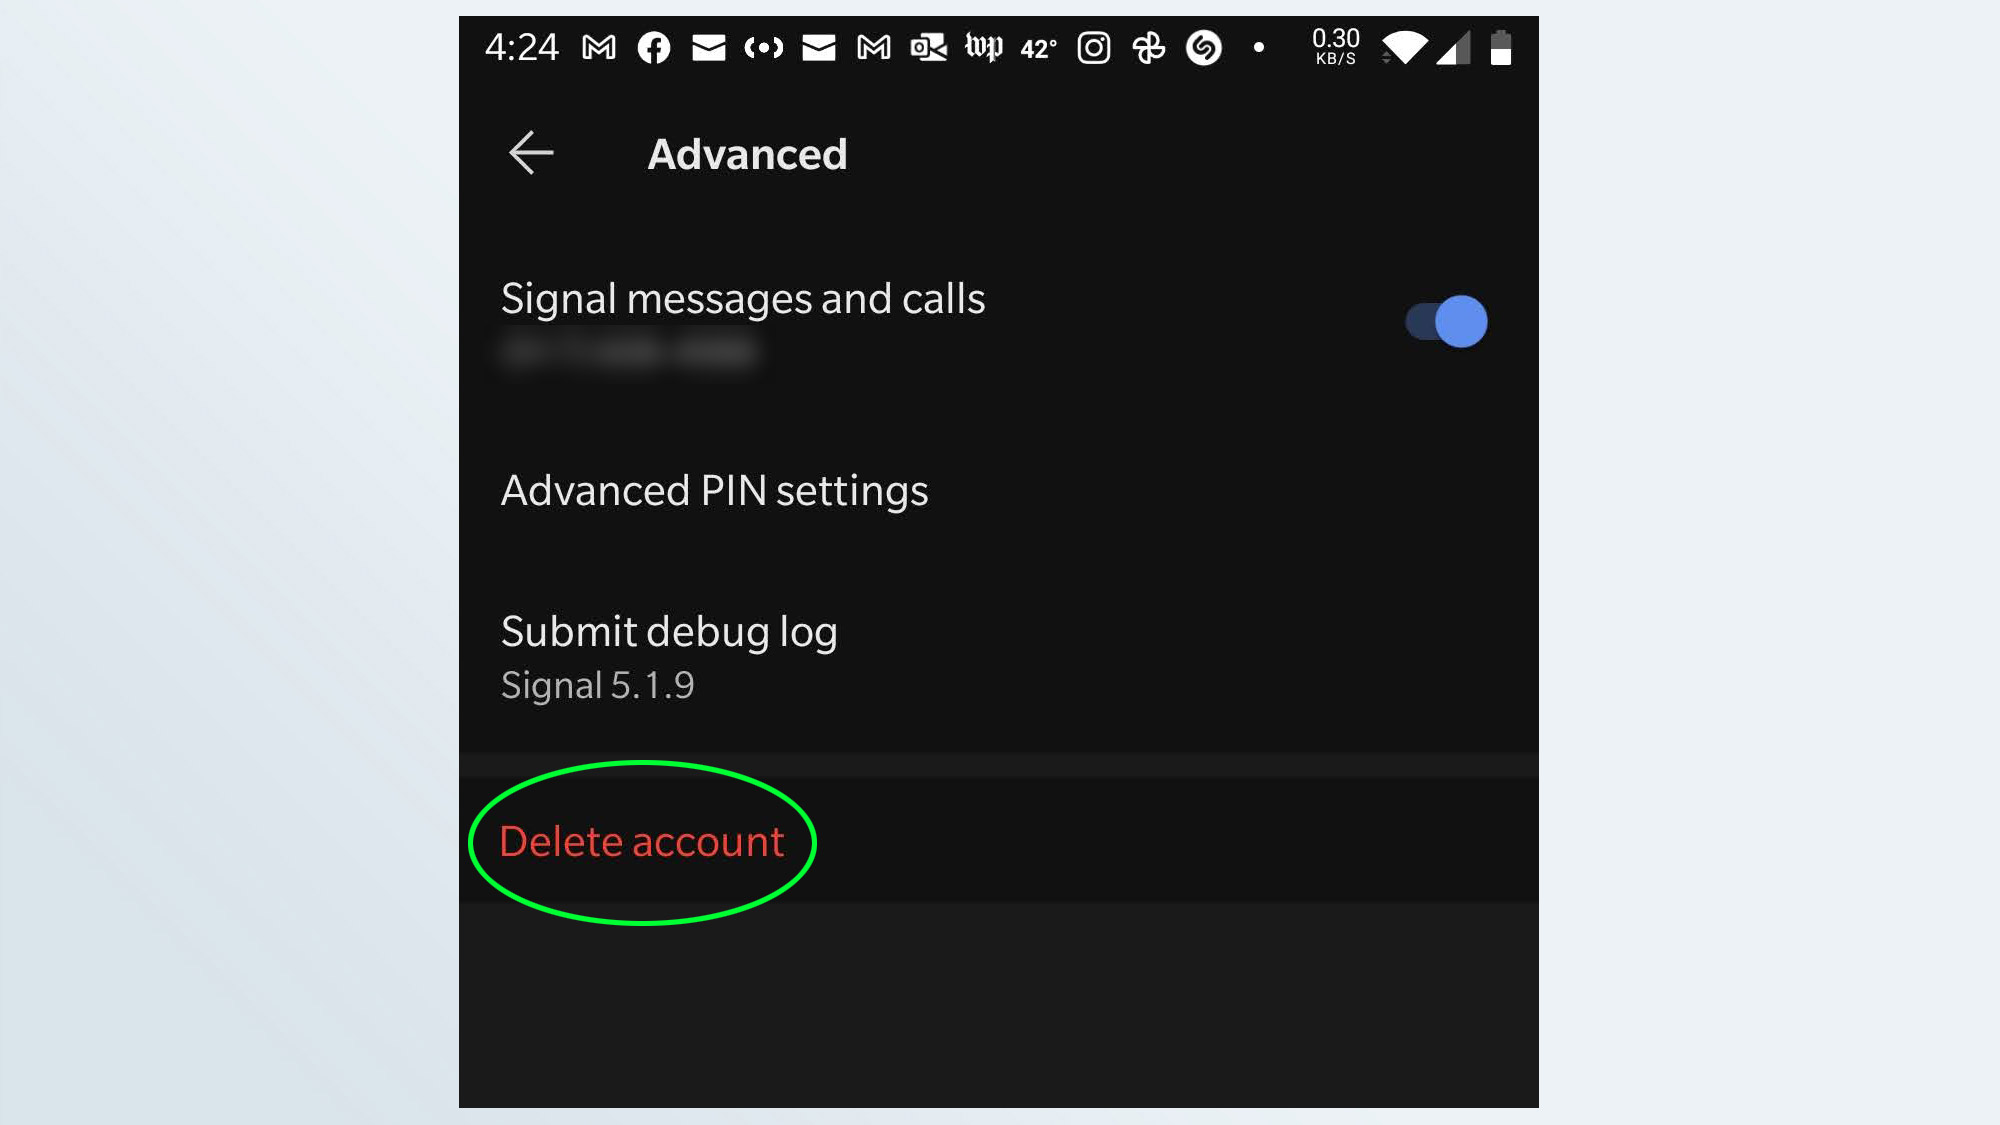 Снимок экрана с параметром Удалить учетную запись в приложении Signal для Android.